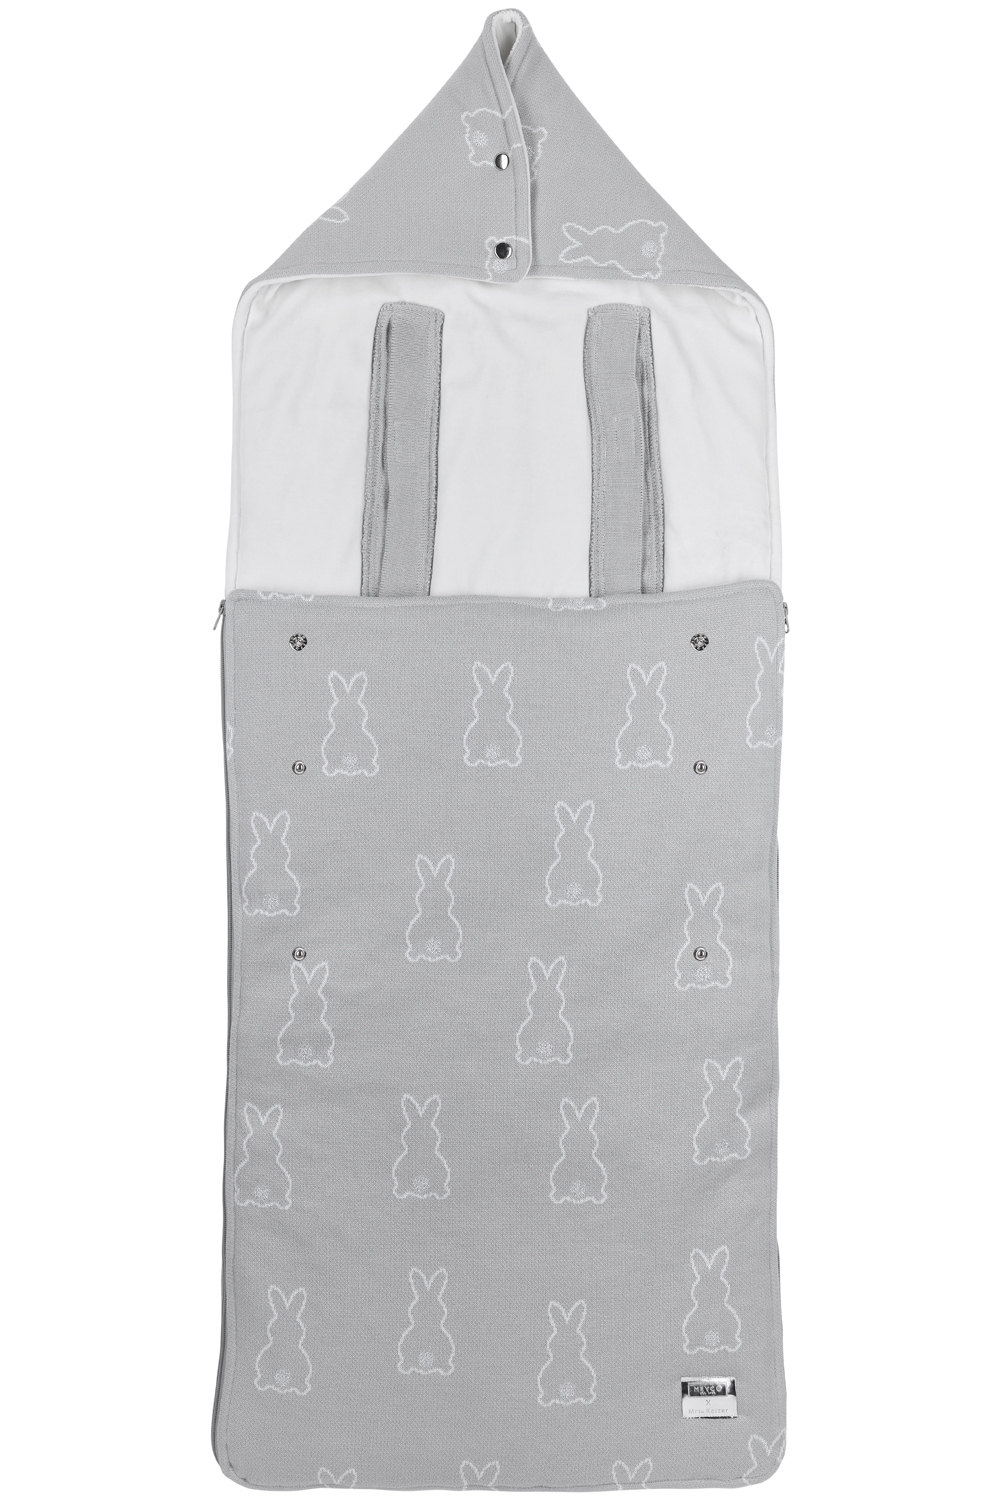 Fußsack für Buggy Rabbit - silver - 45x130cm